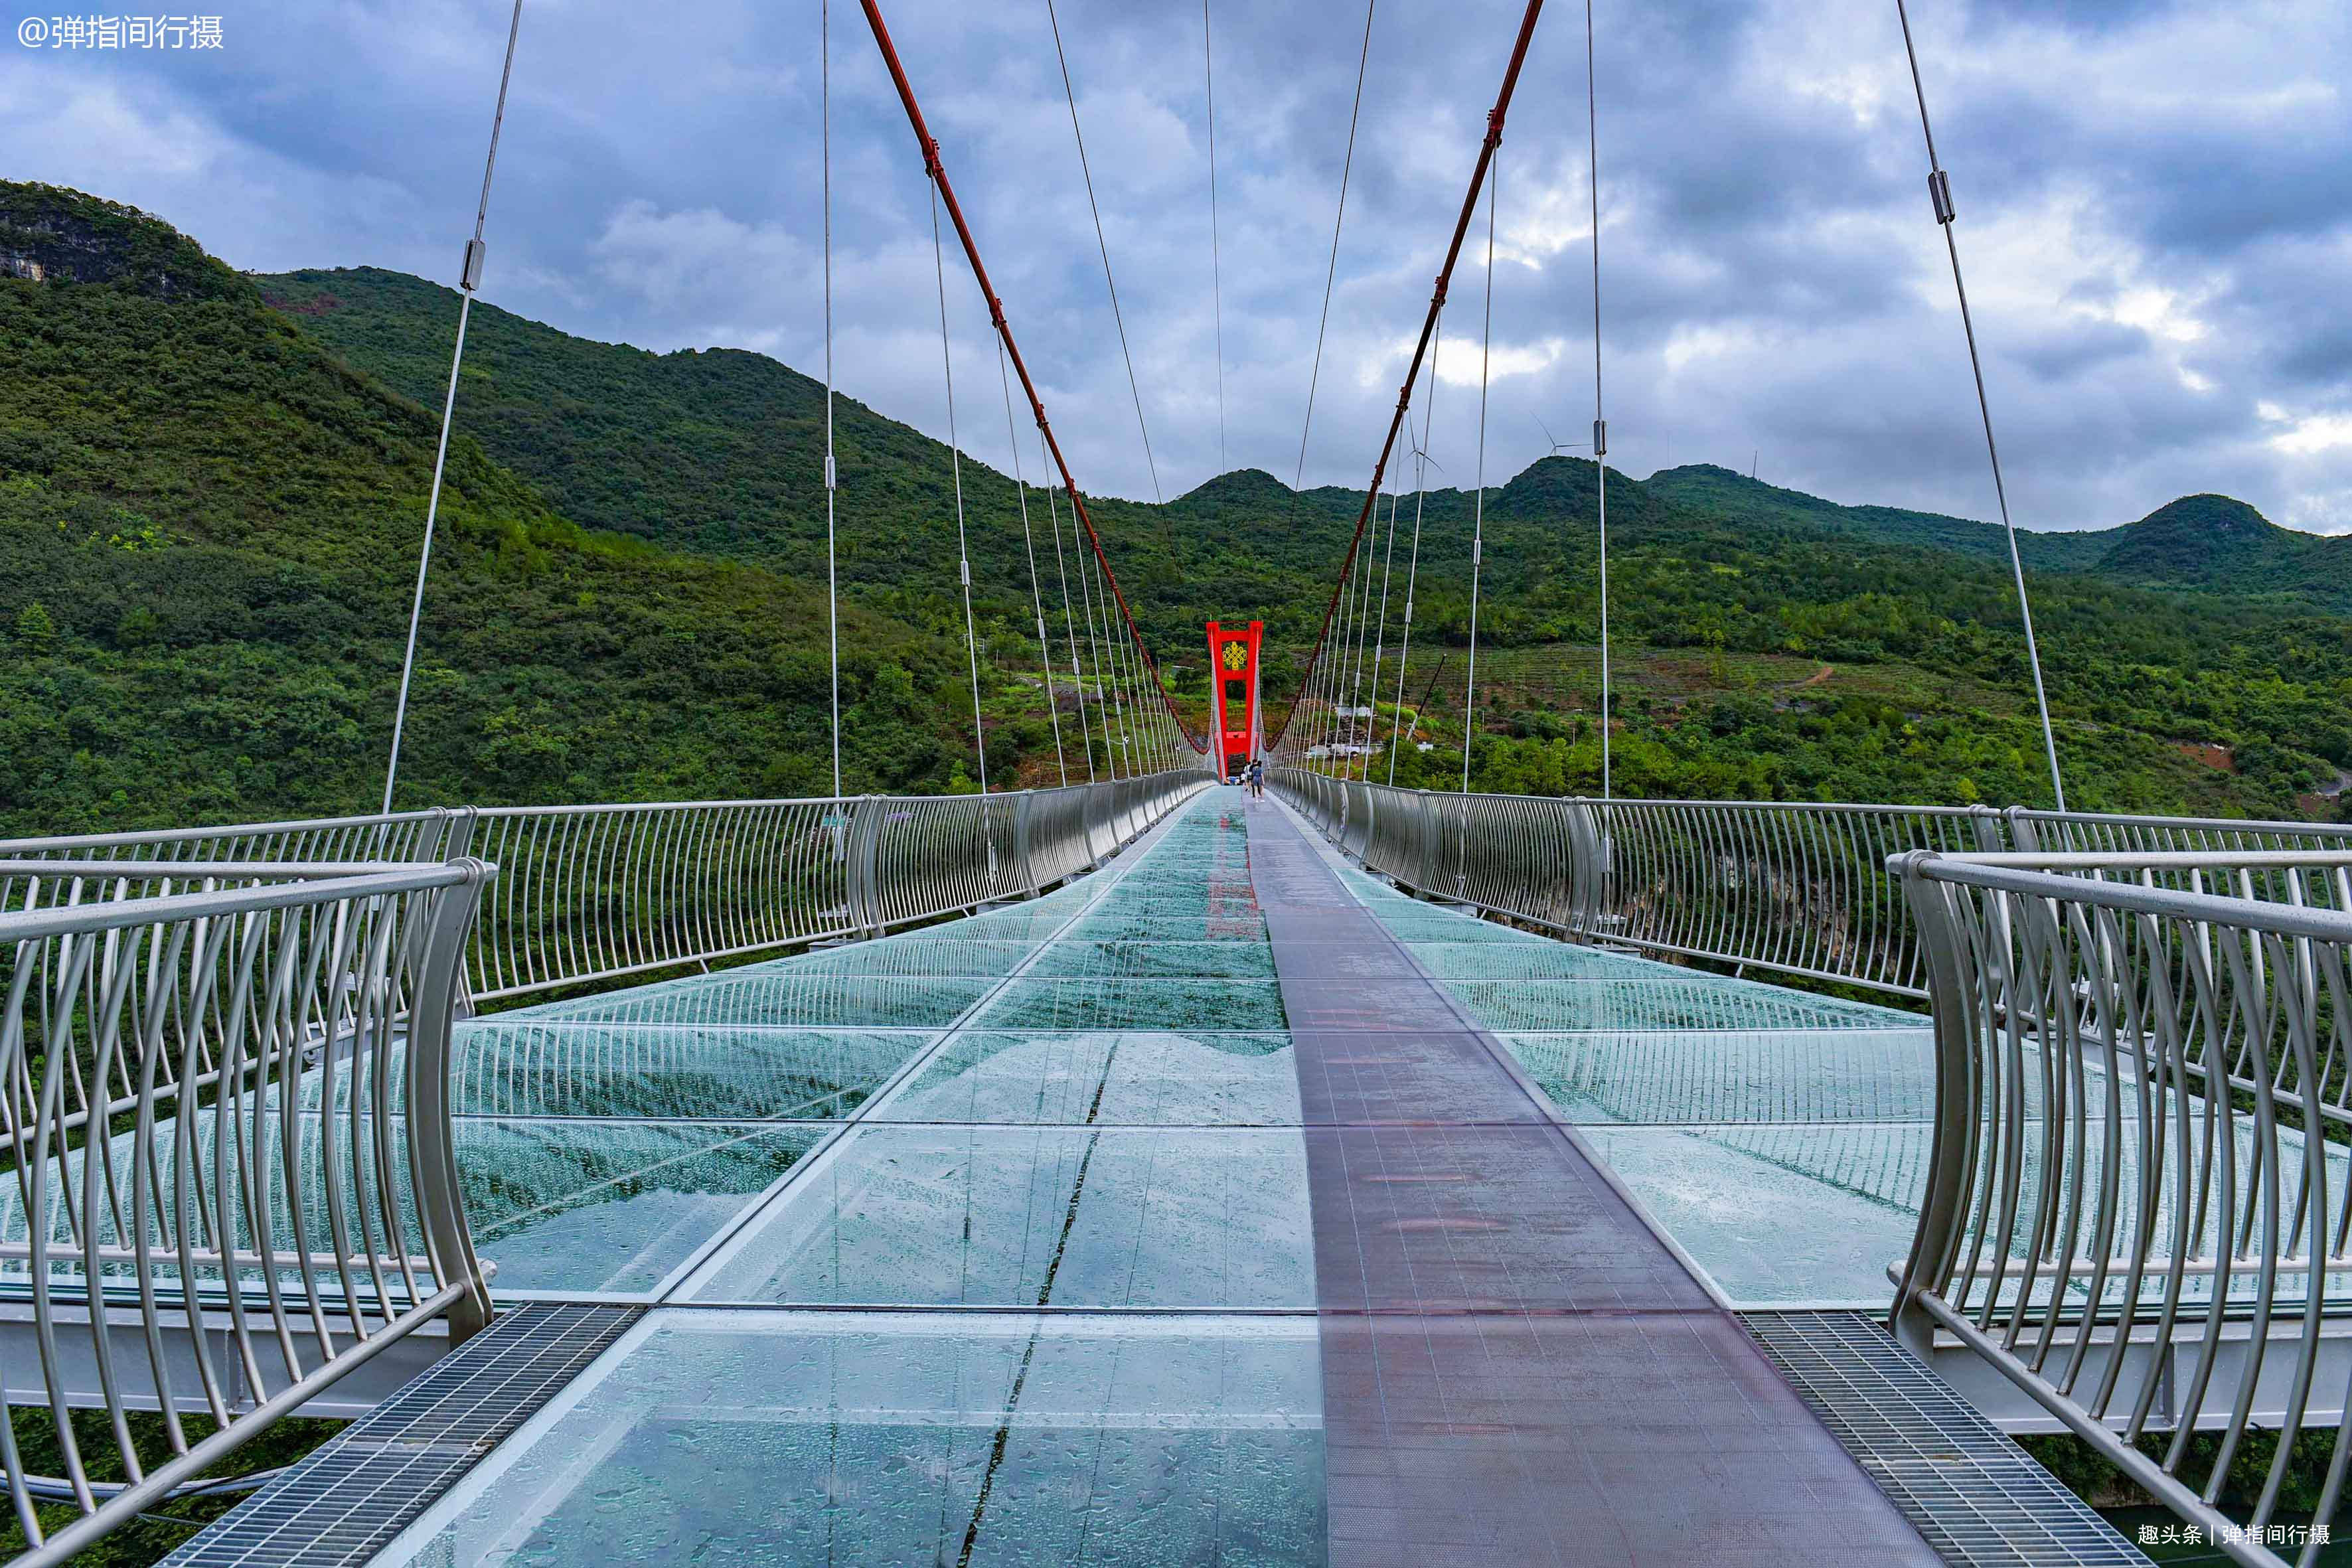 全球最长玻璃桥,藏在广东连州,造价3亿横跨520米入选吉尼斯纪录